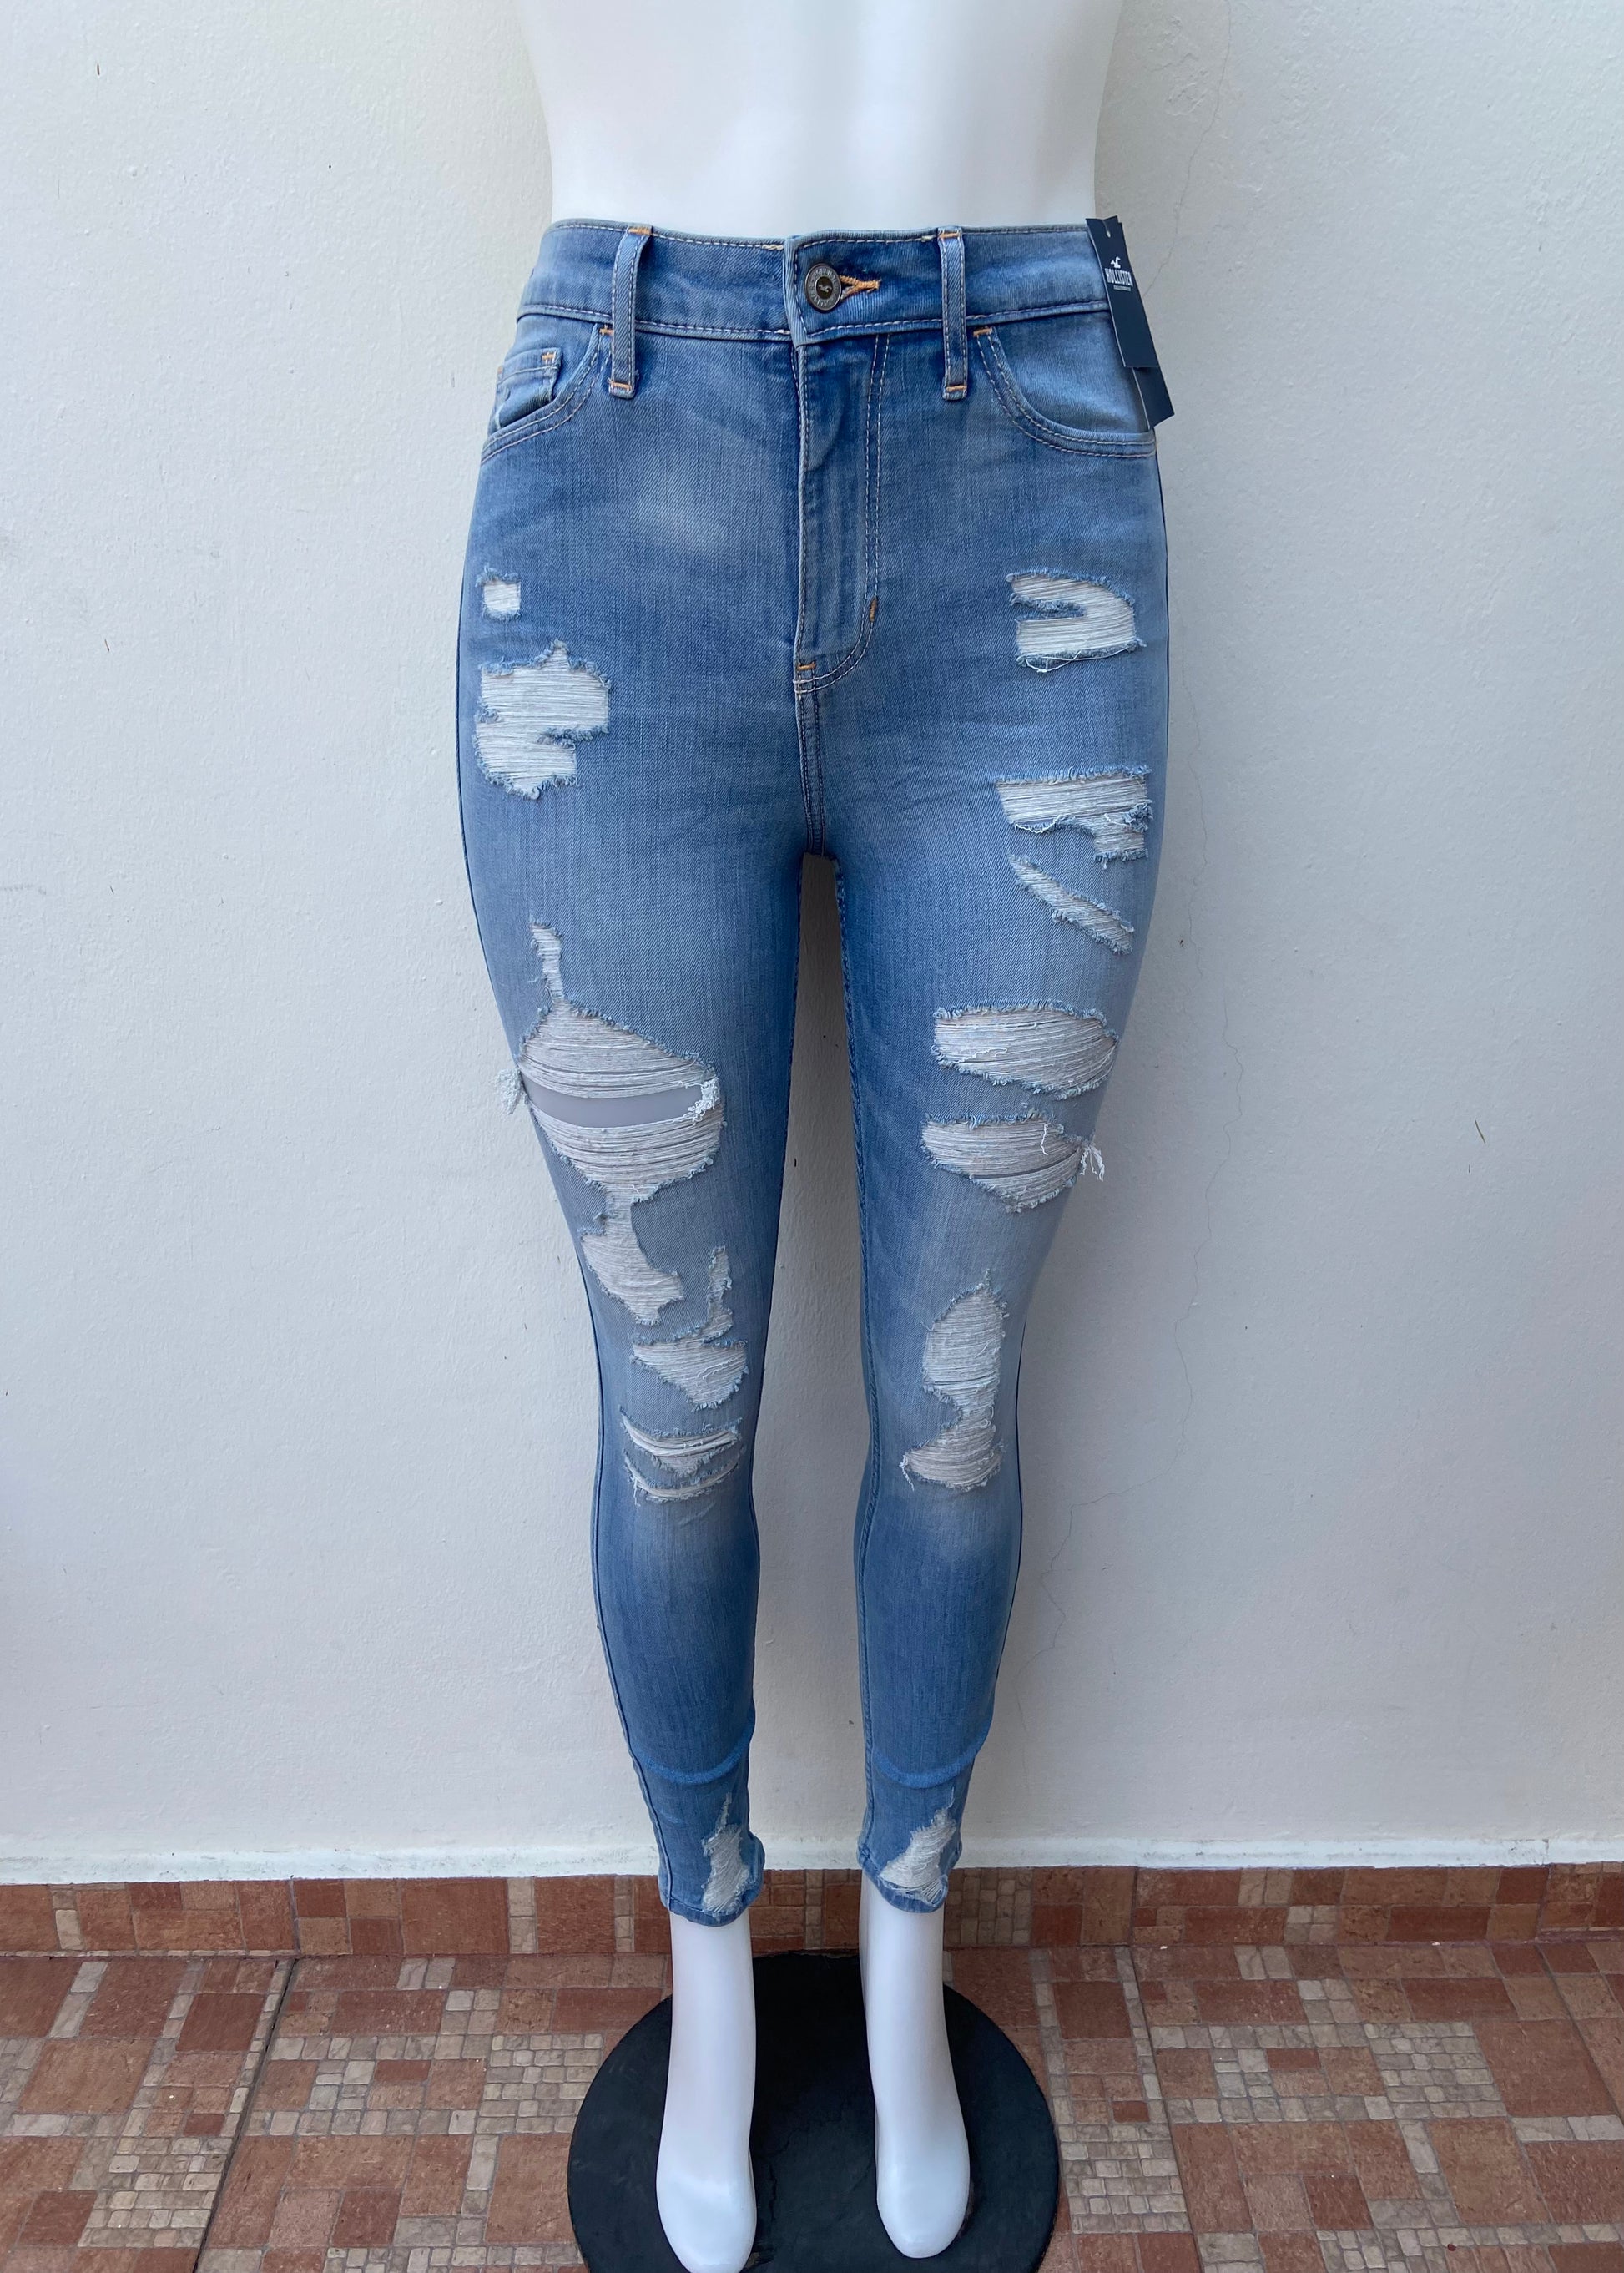 Pantalón Jeans Hollister original, azul claro con rasgados, CURVY HIGH